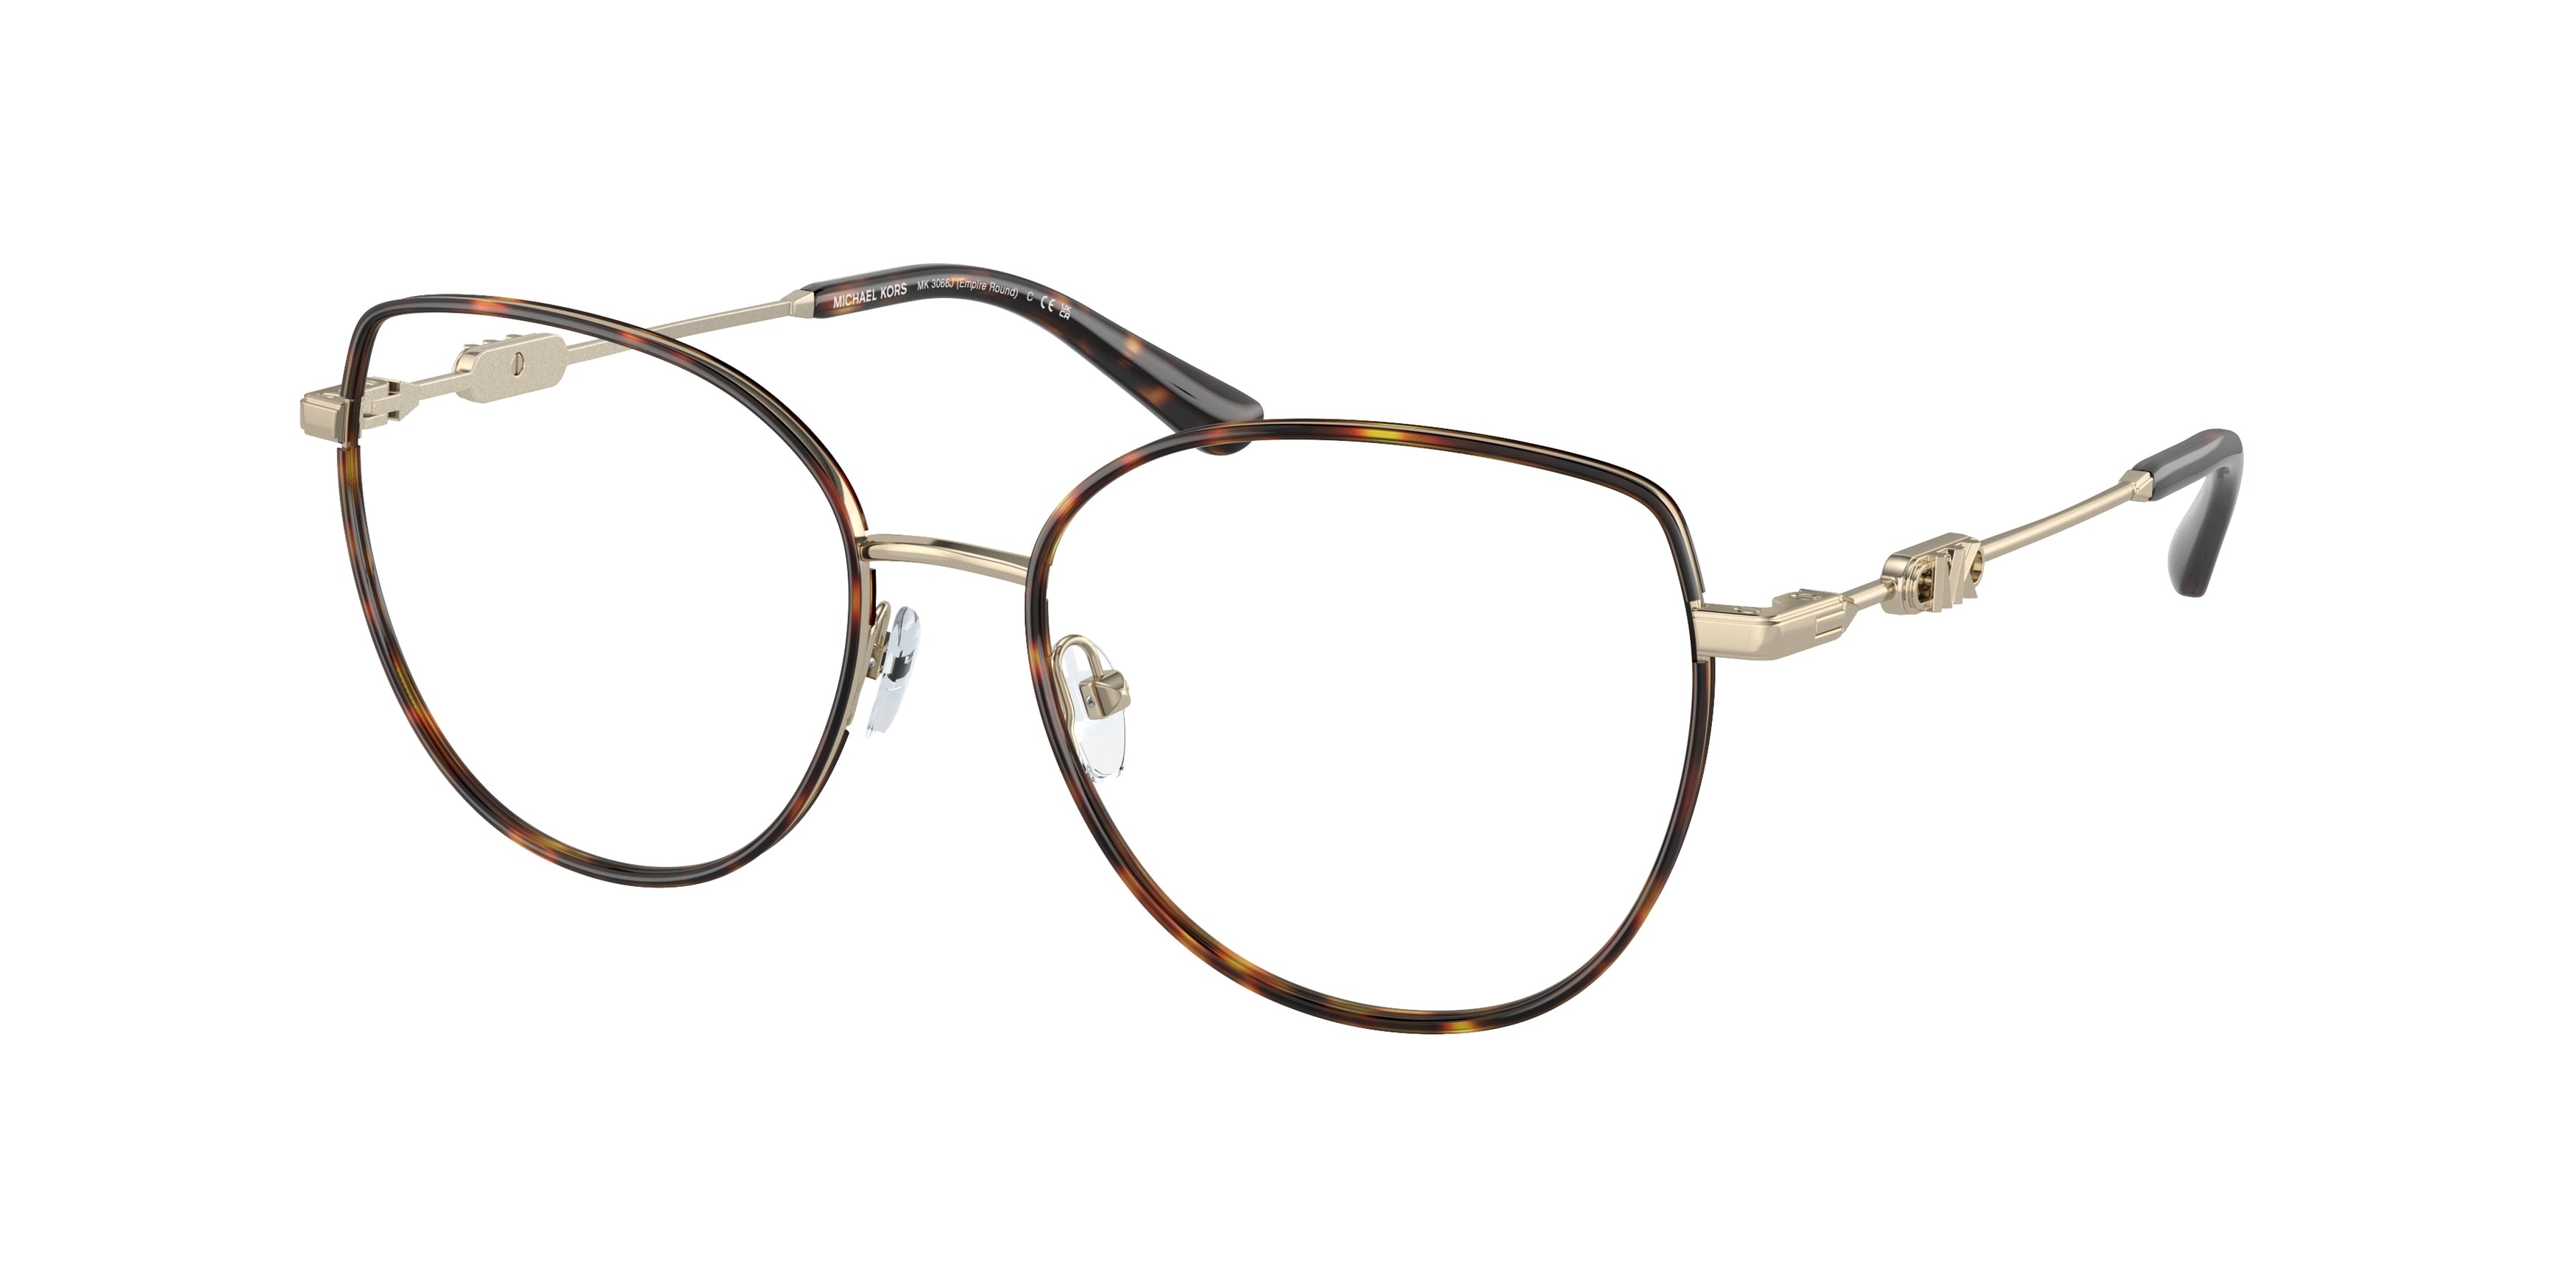 Michael Kors EMPIRE ROUND MK3066J Irregular Eyeglasses  1016-Light Gold/Dark Tortoise 53-140-17 - Color Map Gold